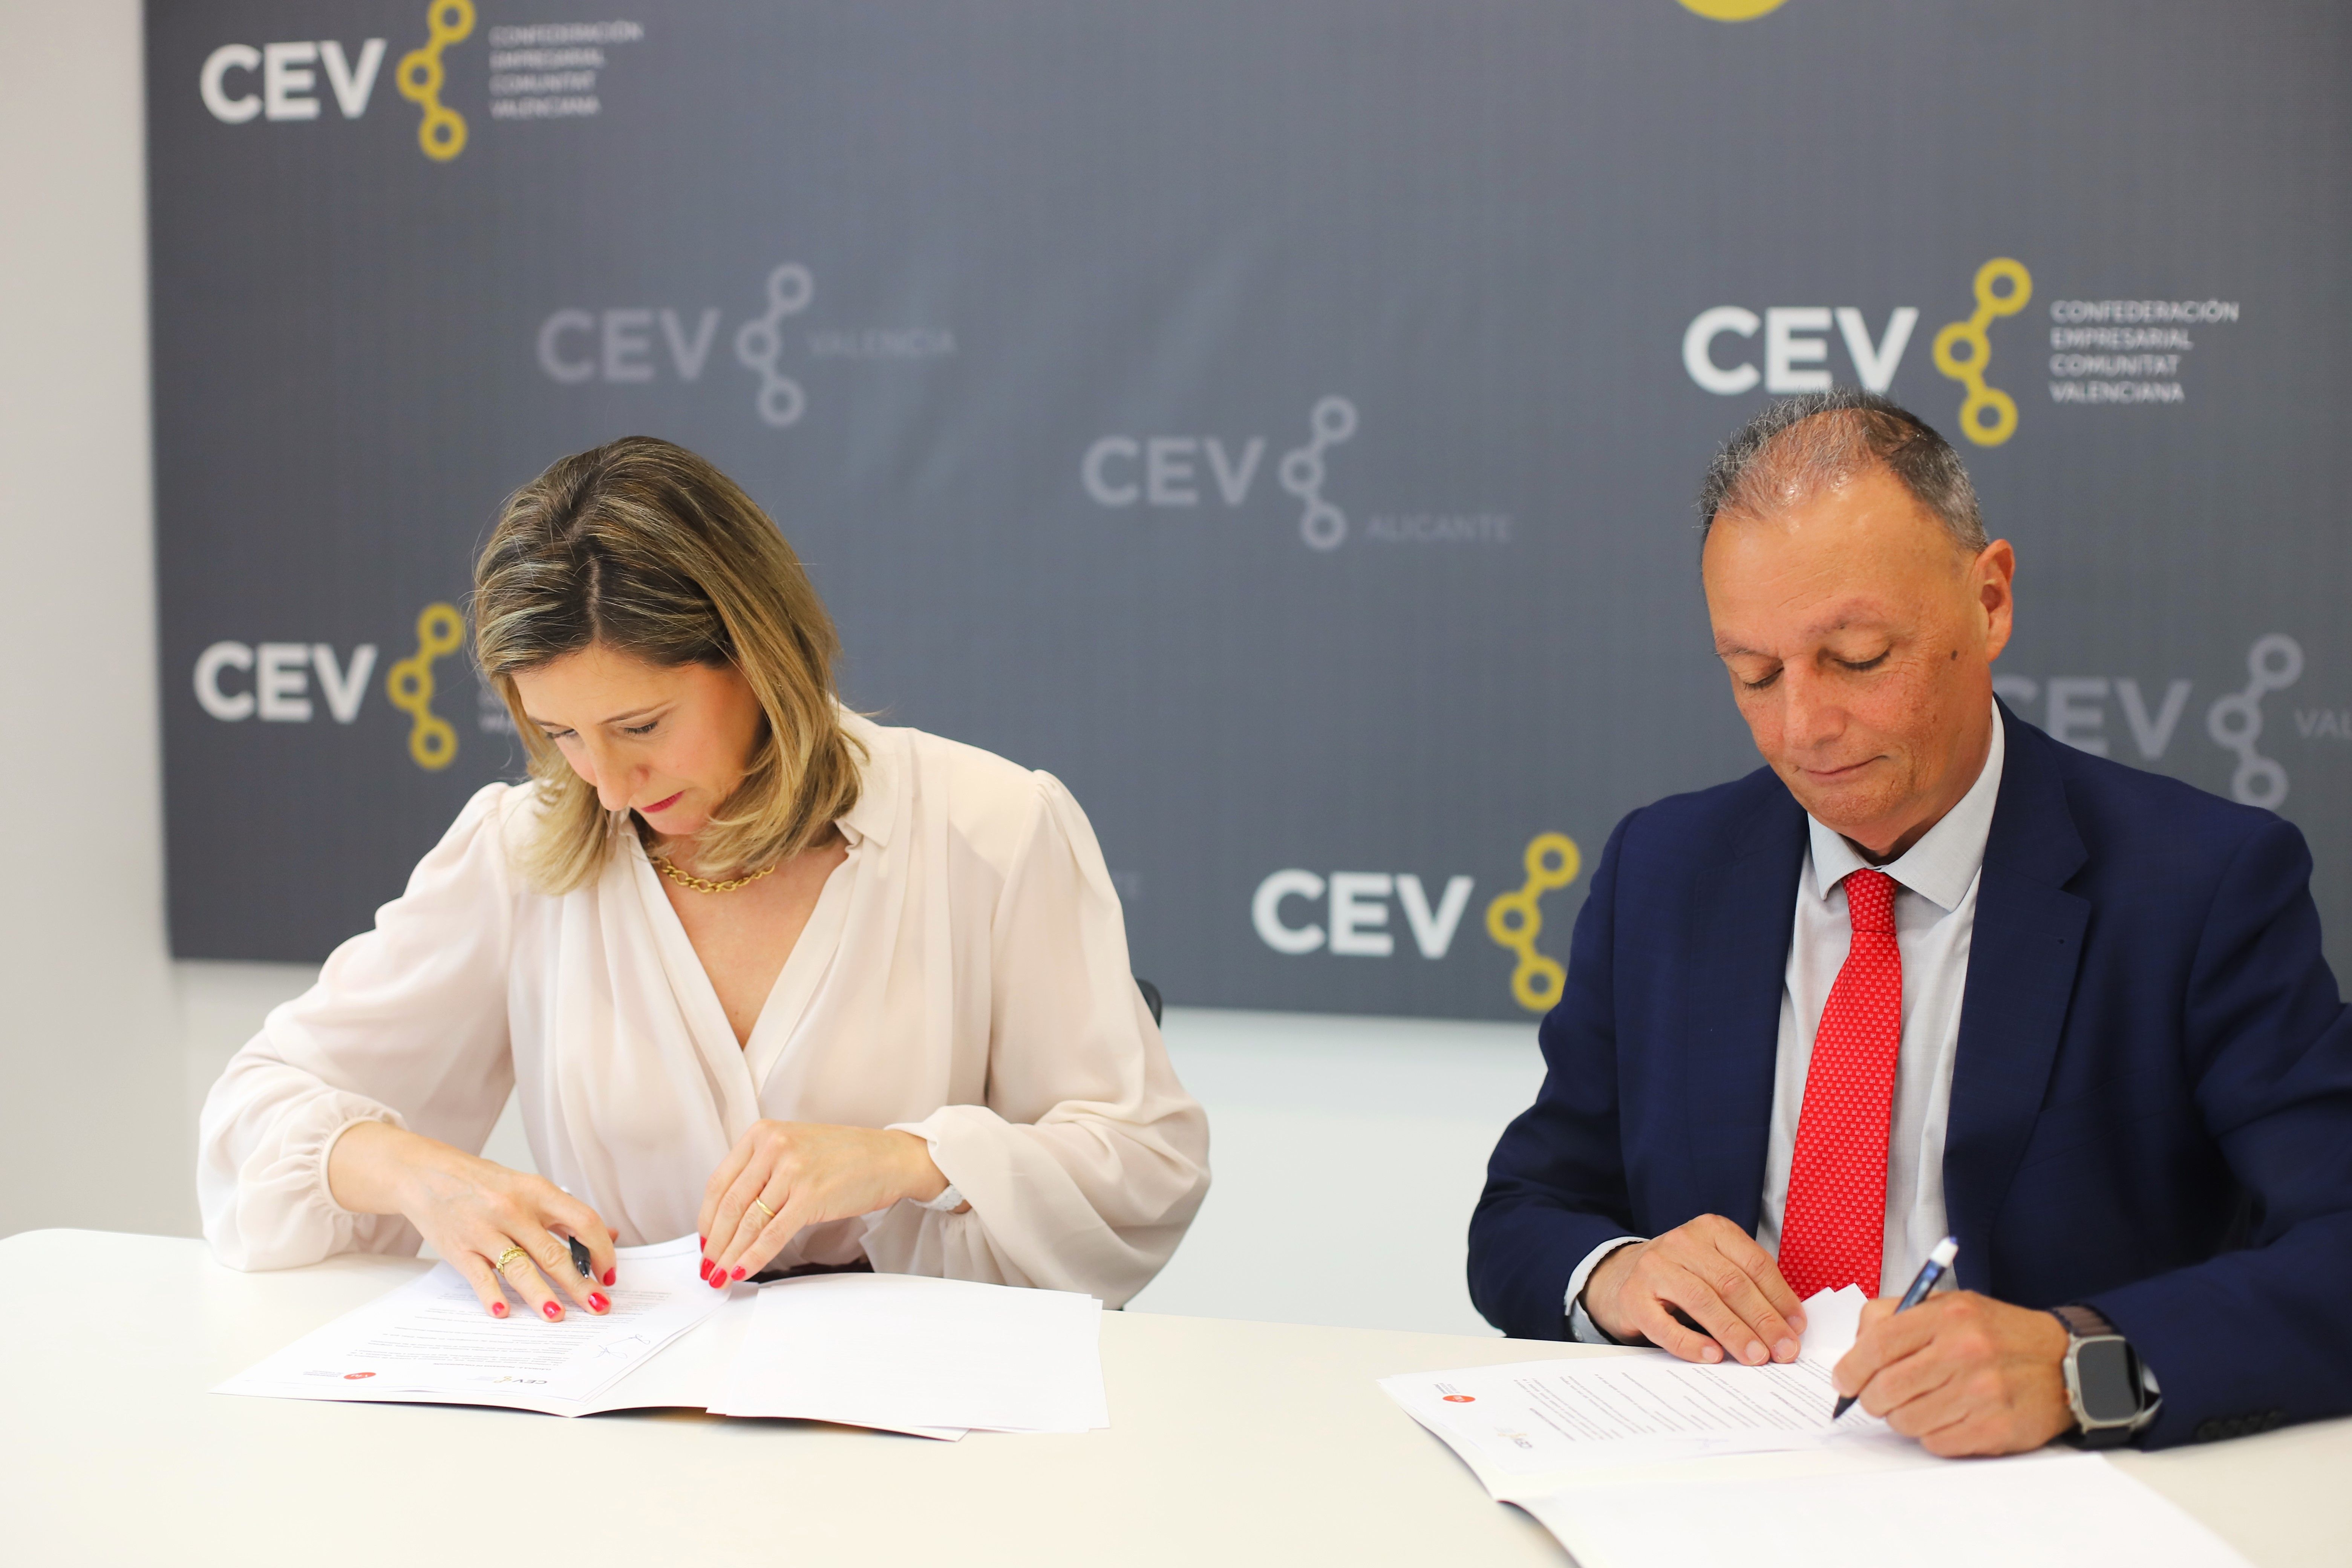 Convenio VIU-CEV firma Dra. Eva Marí Giner, rectora de VIU y Salvador Navarro, presidente de la CEV